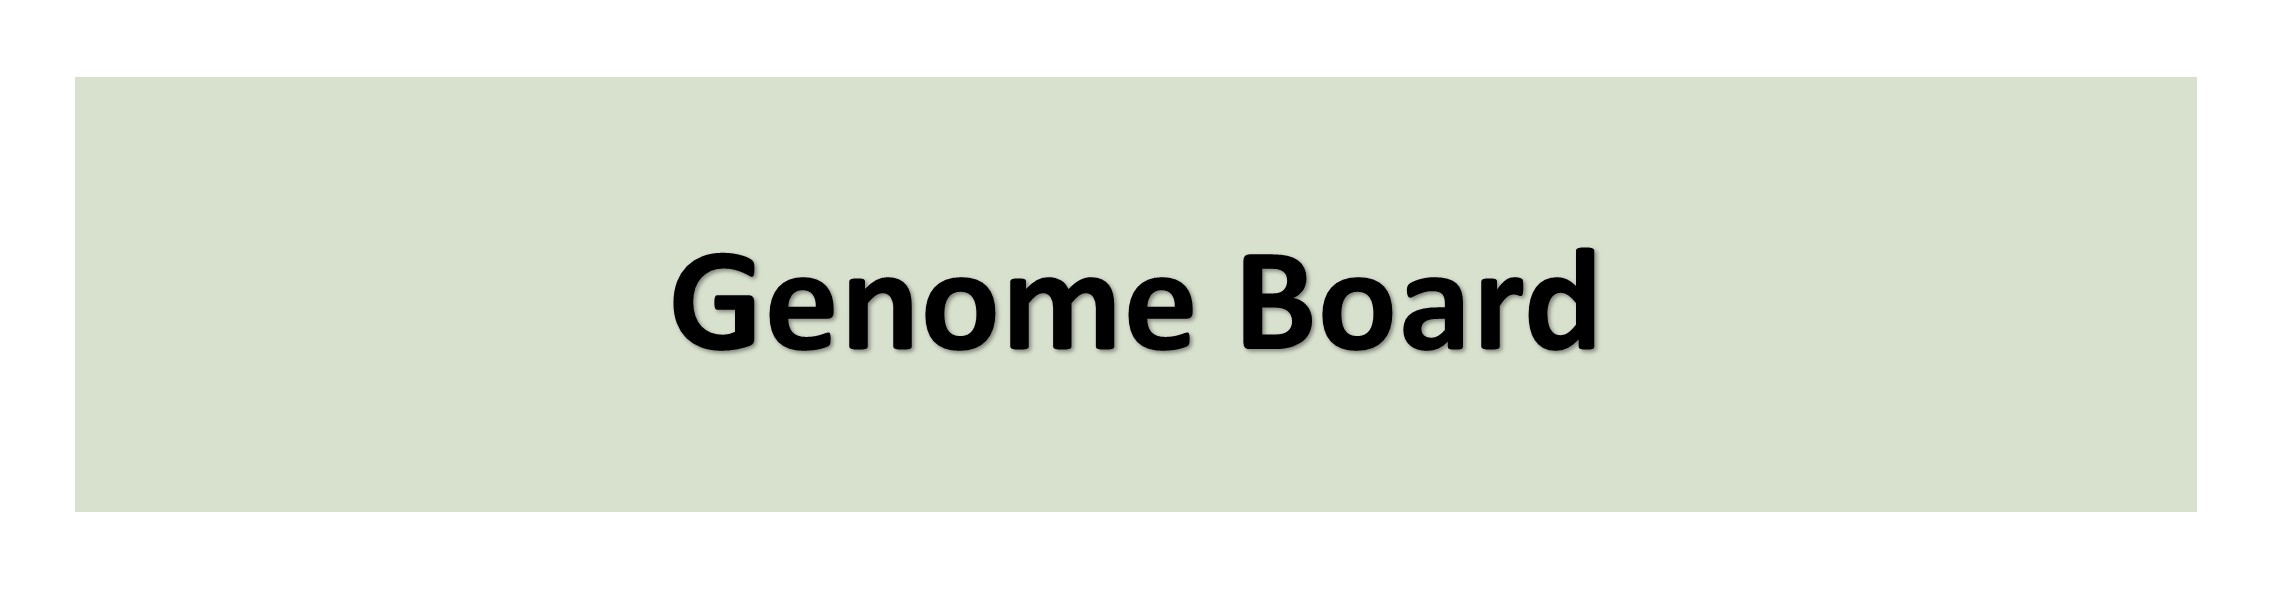 Genome Board Banner